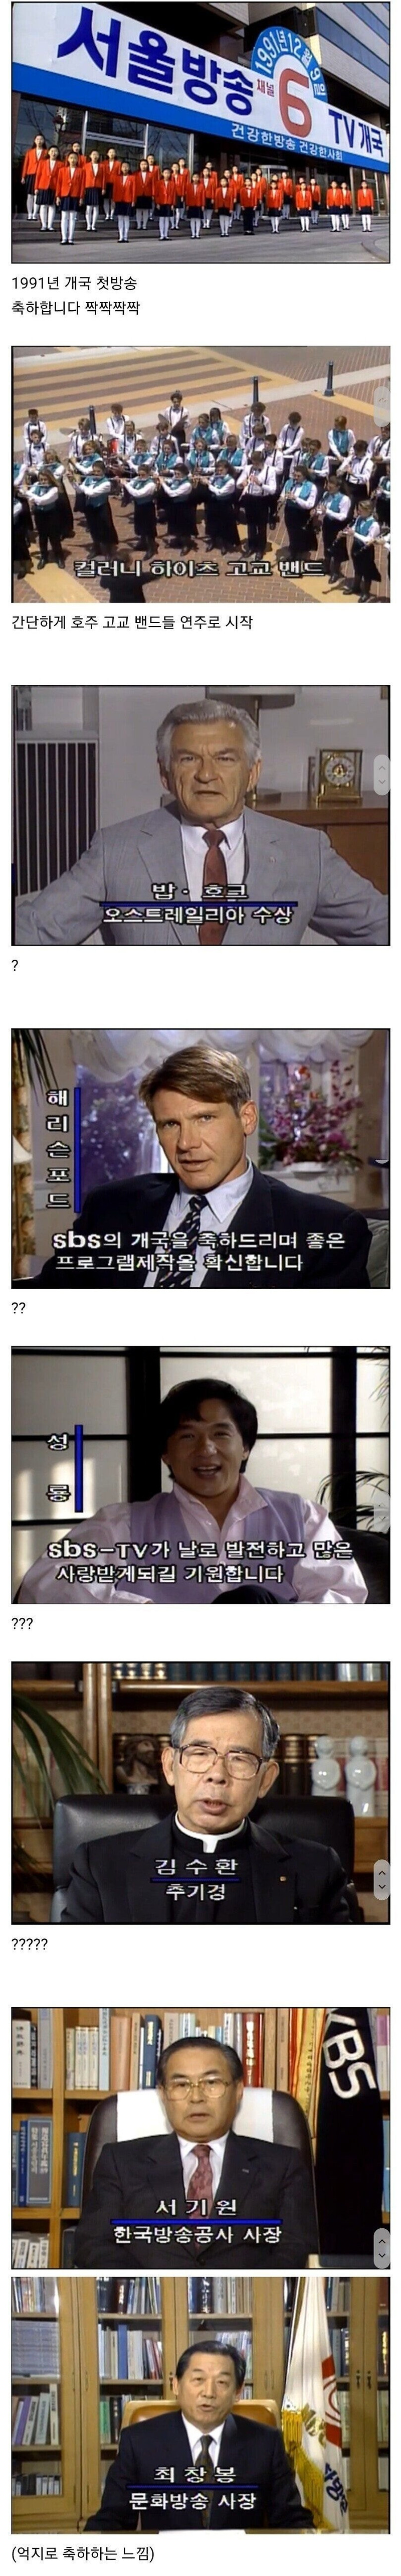 전설의 1991년 SBS 개국방송 축하영상